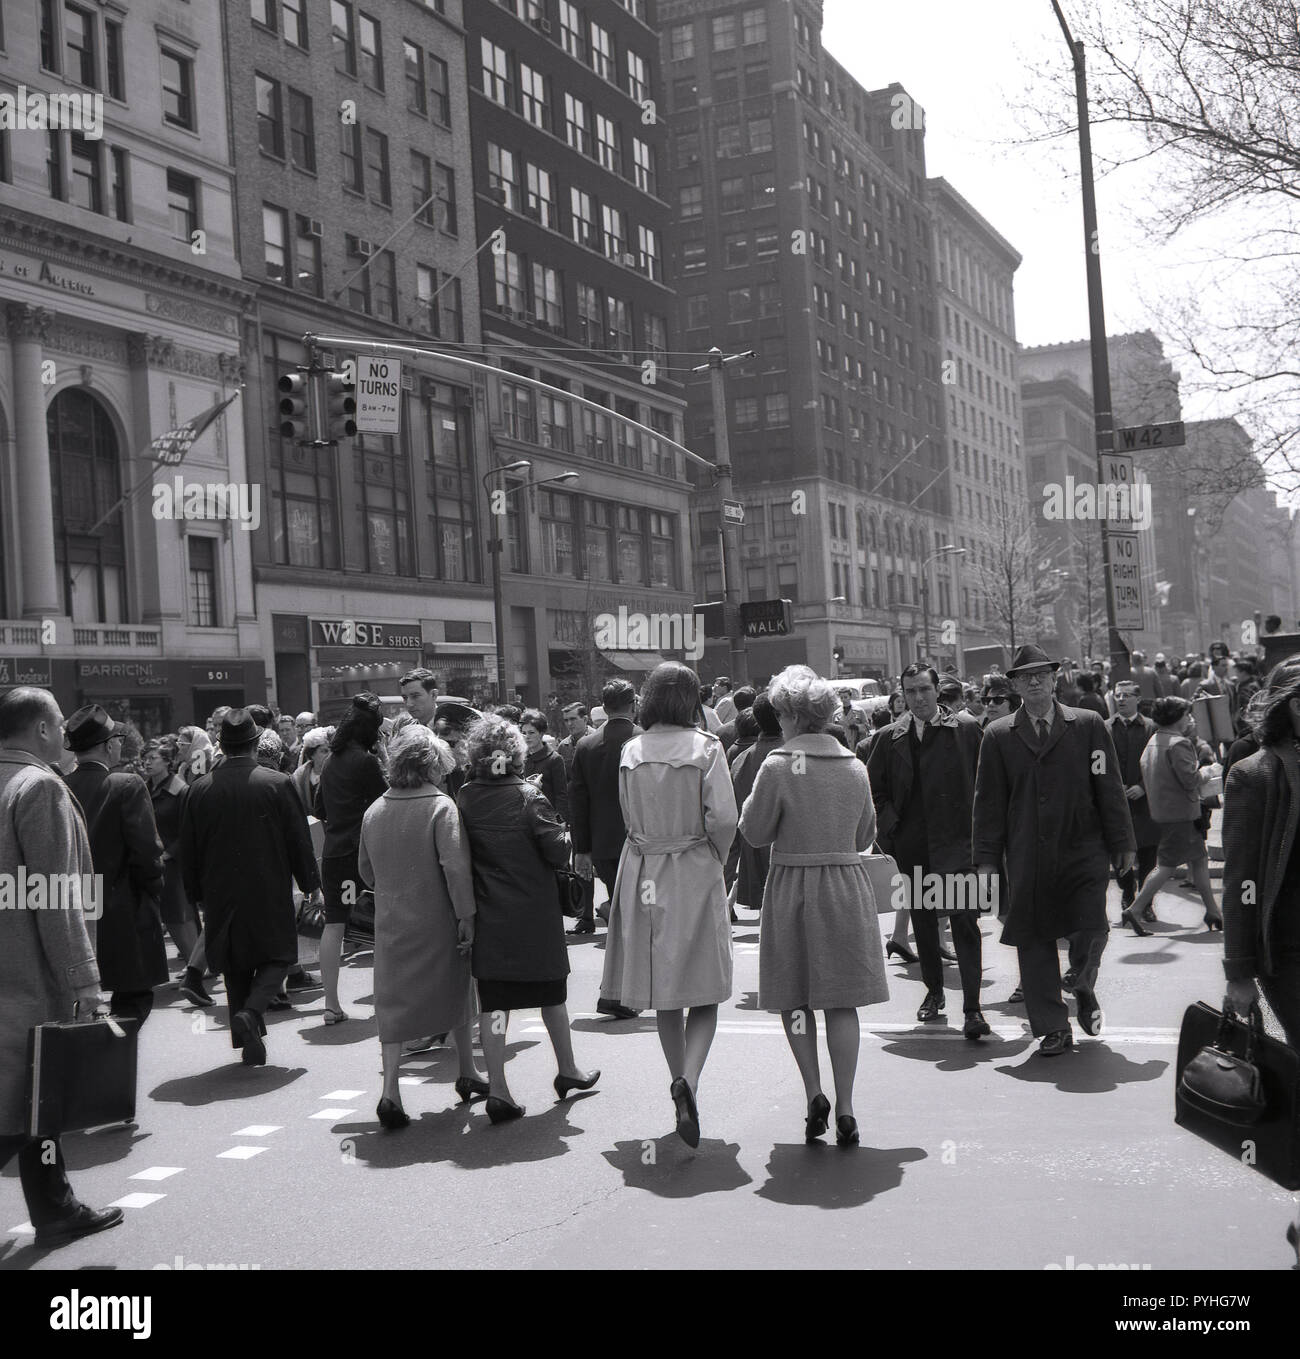 1960, historische, die New Yorker zu Fuß über die Kreuzung an der West 42nd Street in Manhattan, Midtown, New York, New York City, USA. Stockfoto